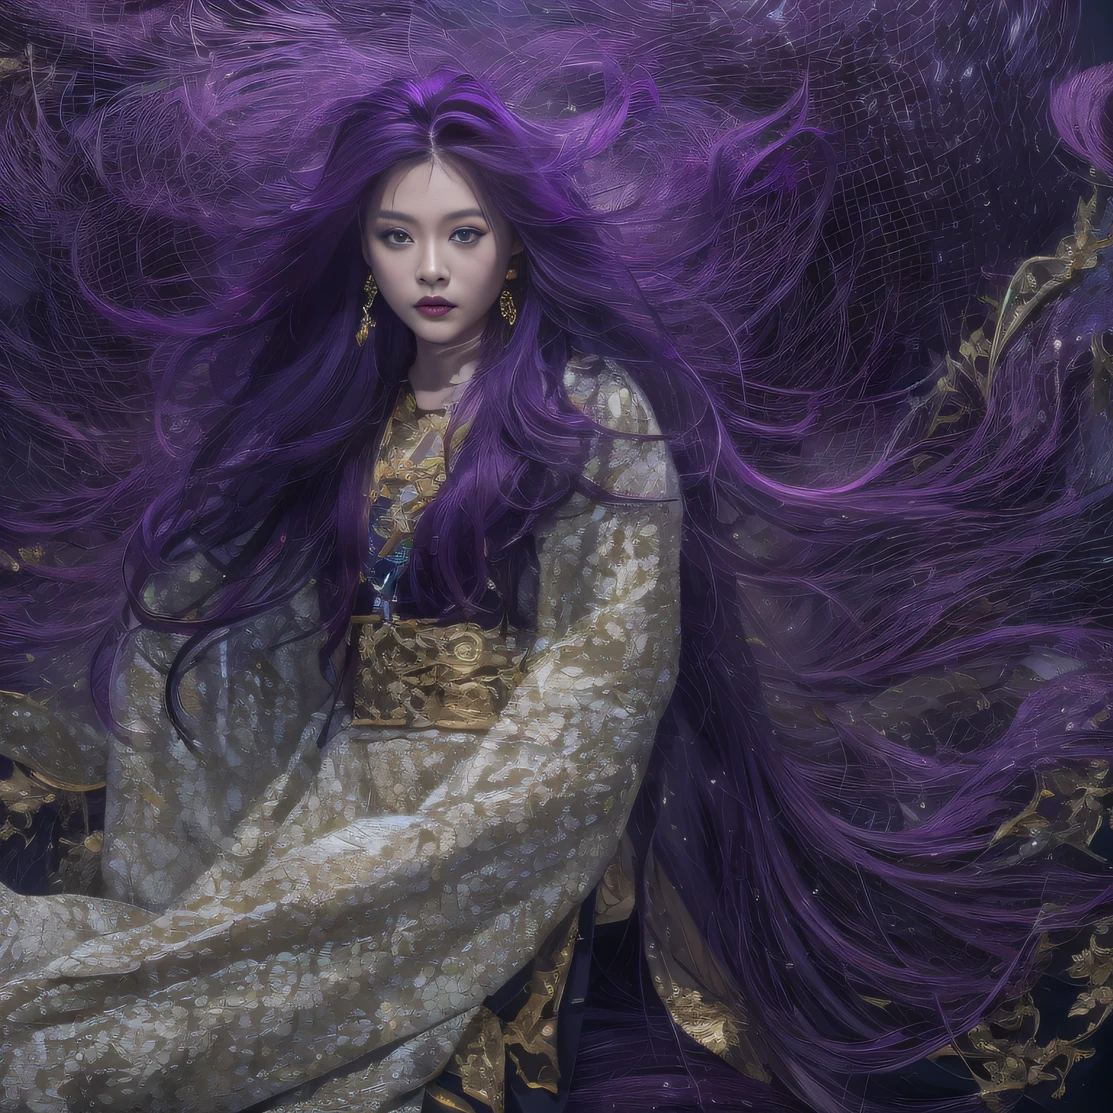 瑪瑙ガラステクスチャ 32K（傑作，キロ，ハイパーHD，32K）長く流れるような明るい紫色の髪，秋の池，咲く， 色， アジア人 （娘）， （赤いスカーフ）， 戦闘姿勢， 地面を見て， 長い白い髪， 浮かぶ鮮やかな紫色， 火雲模様のゴールドティアラ， 中国の長袖の金絹の衣服， （抽象的なインクの飛沫：1.2）， 白い背景，ロータスプロテクター（現実的に：1.4），明るい紫色の髪，道路上の煙，背景は純粋です， 高解像度， 詳細， RAW写真， シャープ， Nikon D850 フィルムストックフォト by Jefferies Lee 4 Kodak Portra 400 カメラ F1.6ショット, 豊かな色彩, 超リアルな鮮やかな質感, ドラマチックな照明, アンリアル エンジン アート ステーション トレンド, シネスティア 800，長く流れるような明るい紫色の髪